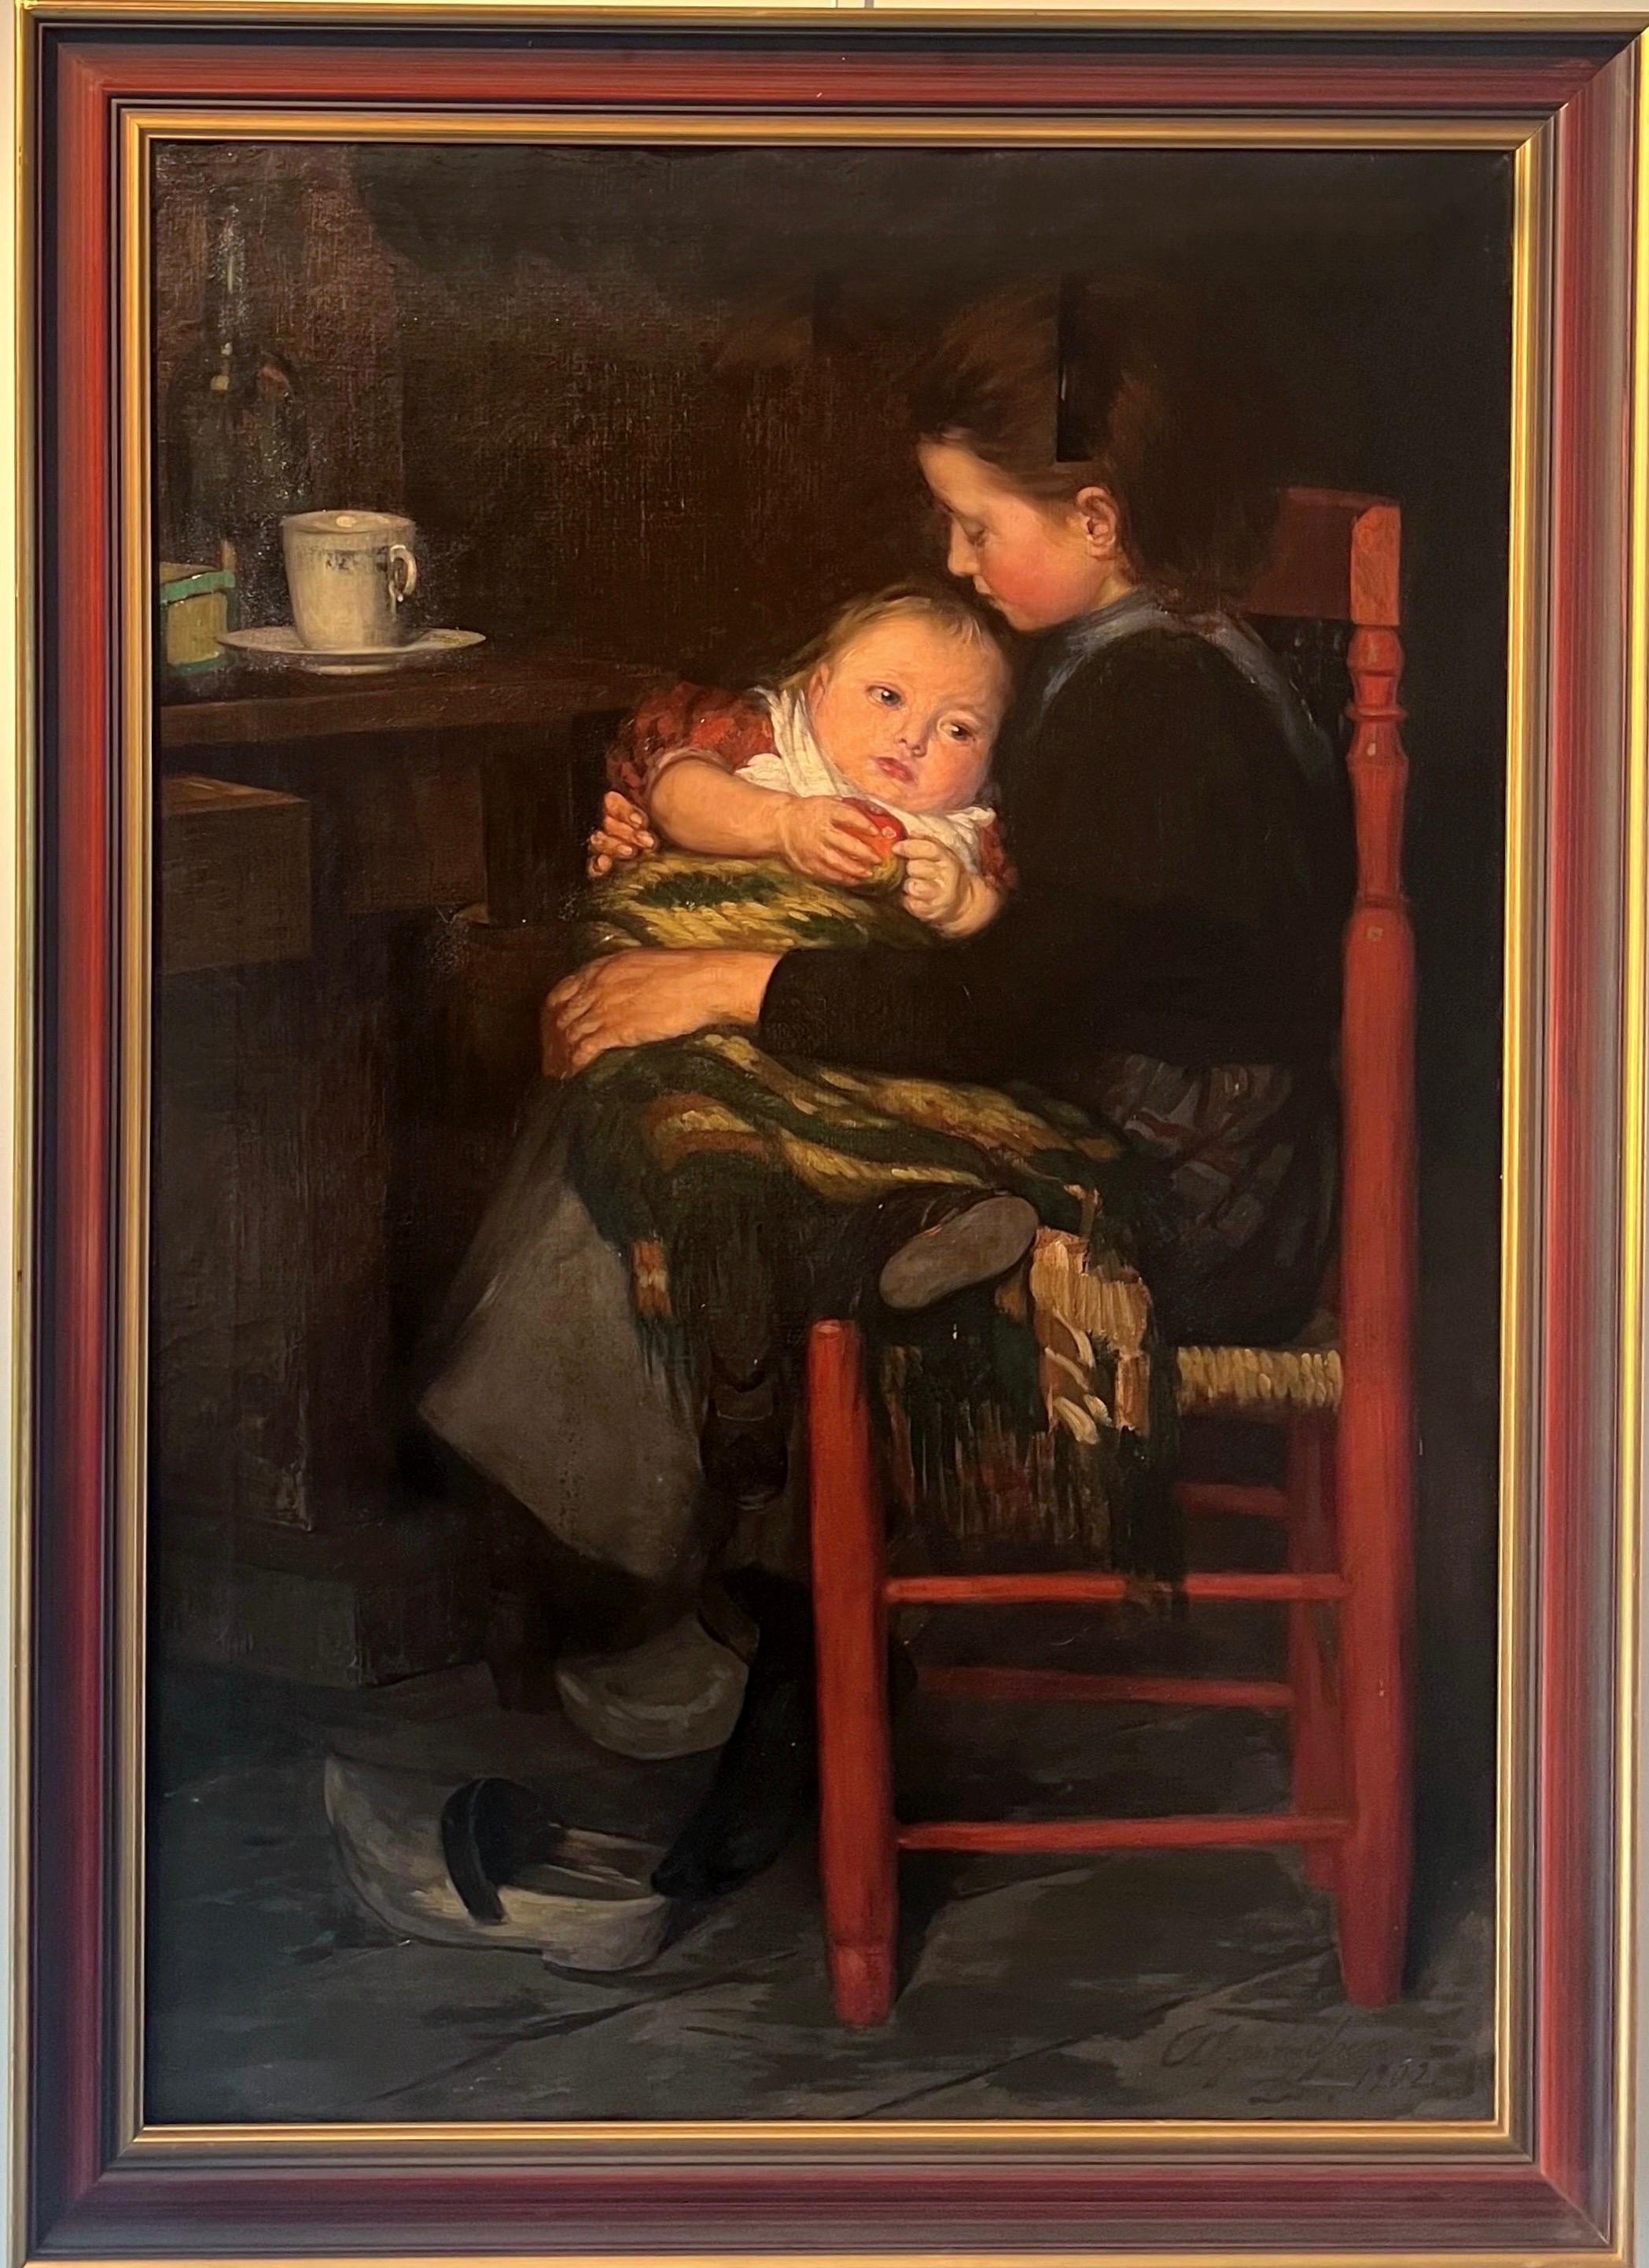 August Algermissen Portrait Painting – Großes Ölgemälde aus dem Jahr 1902 – Deutsche Schule – Ein Porträt der Schwesternliebe 